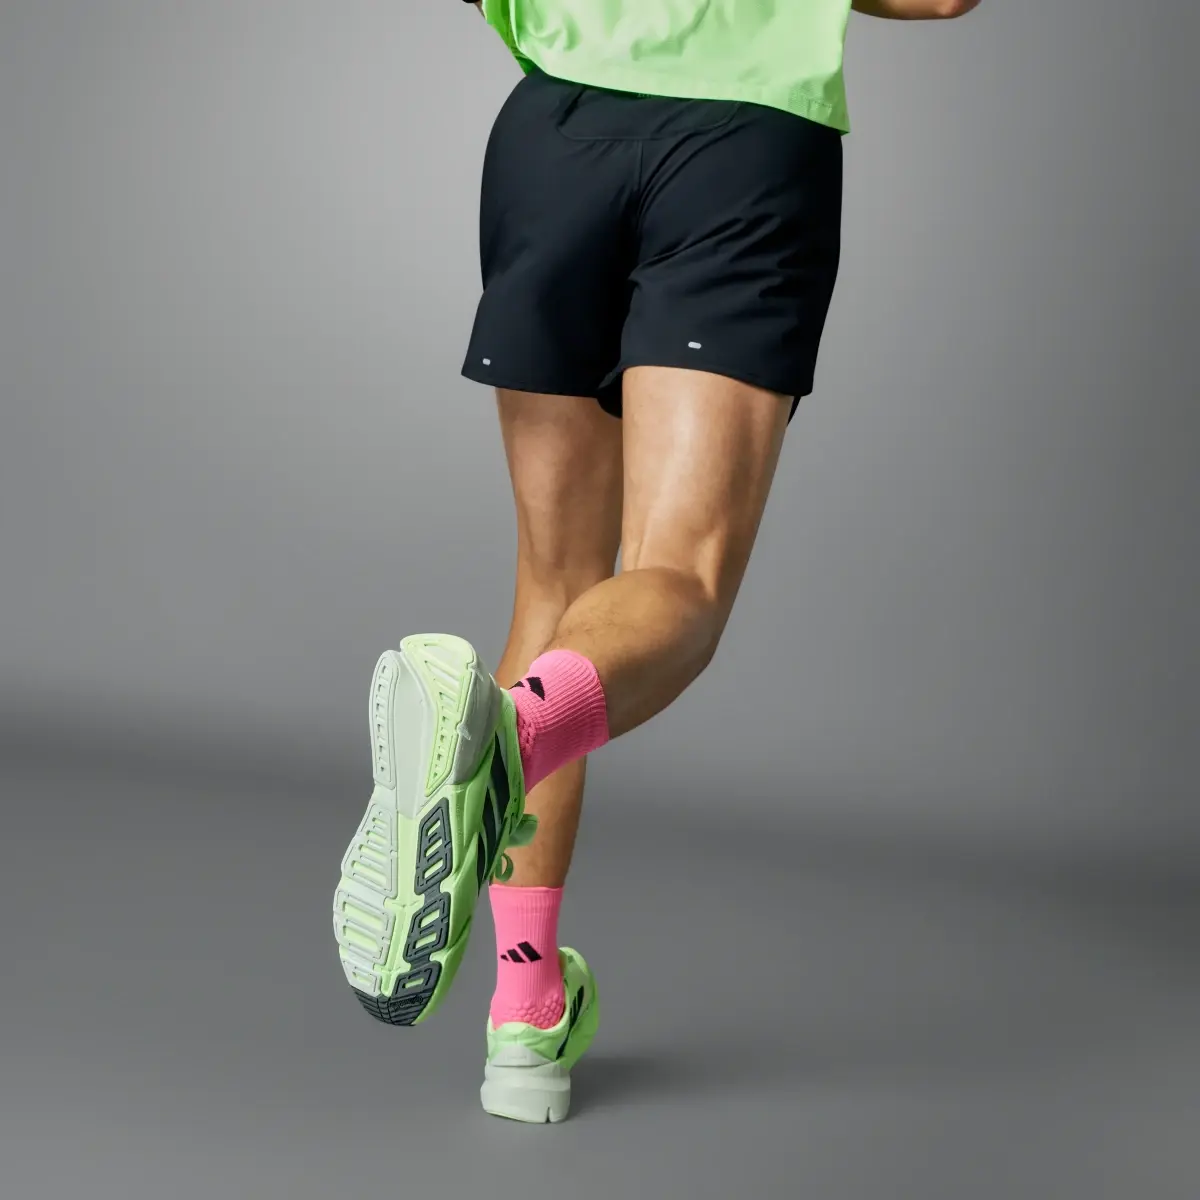 Adidas Own the Run 3-Stripes Shorts. 2